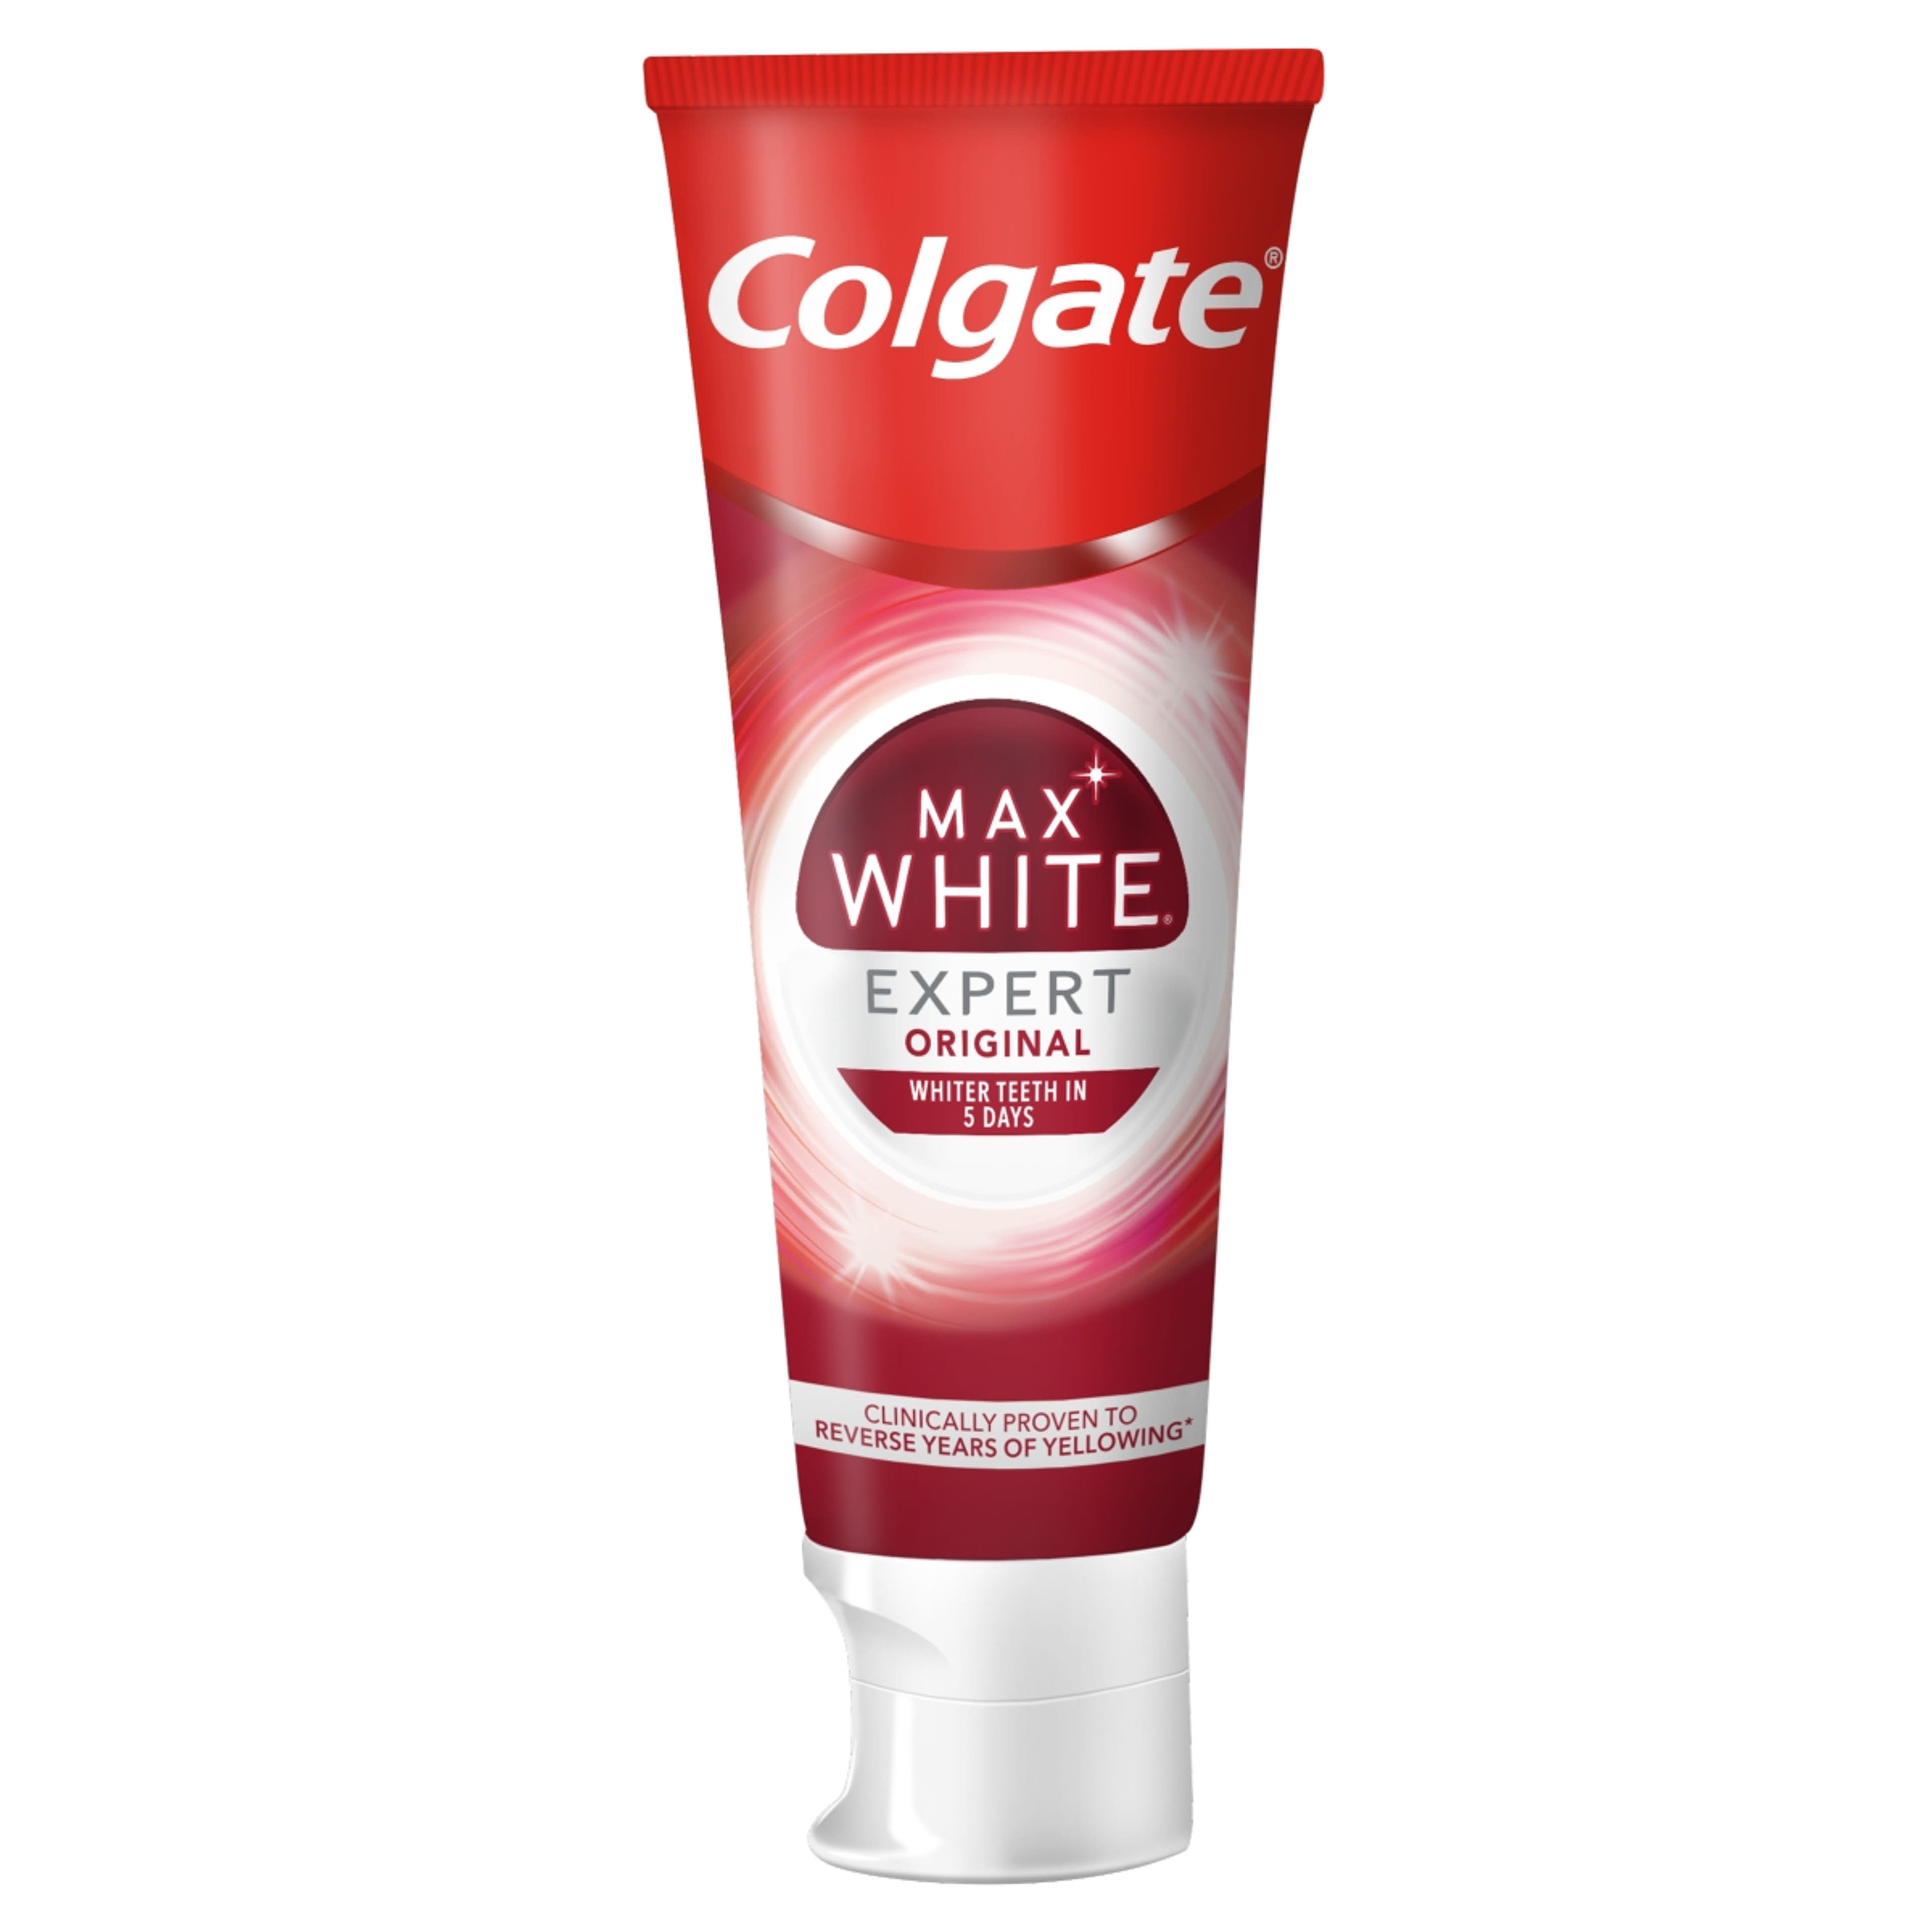 Colgate Max White Expert Original fogkrém - 75 ml-2